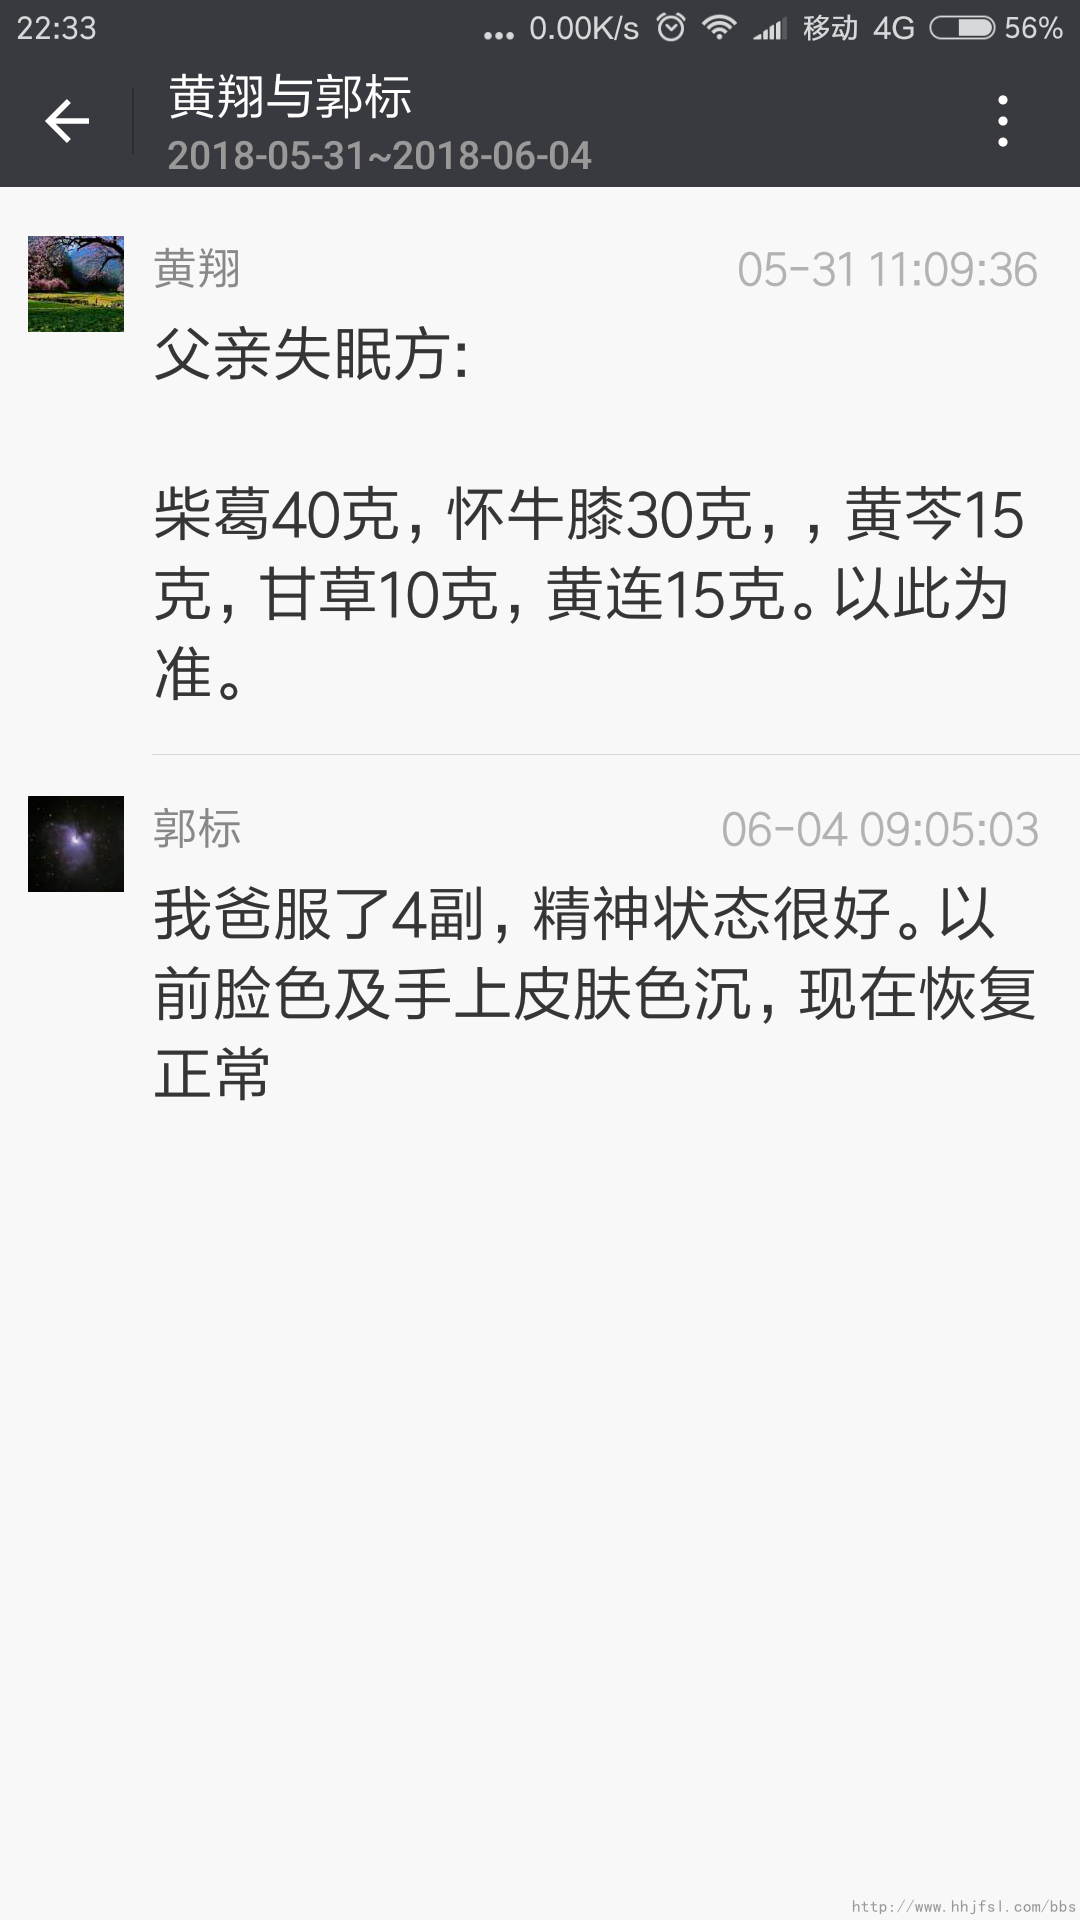 Screenshot_2018-06-08-22-33-39-799_com.tencent.mm.png